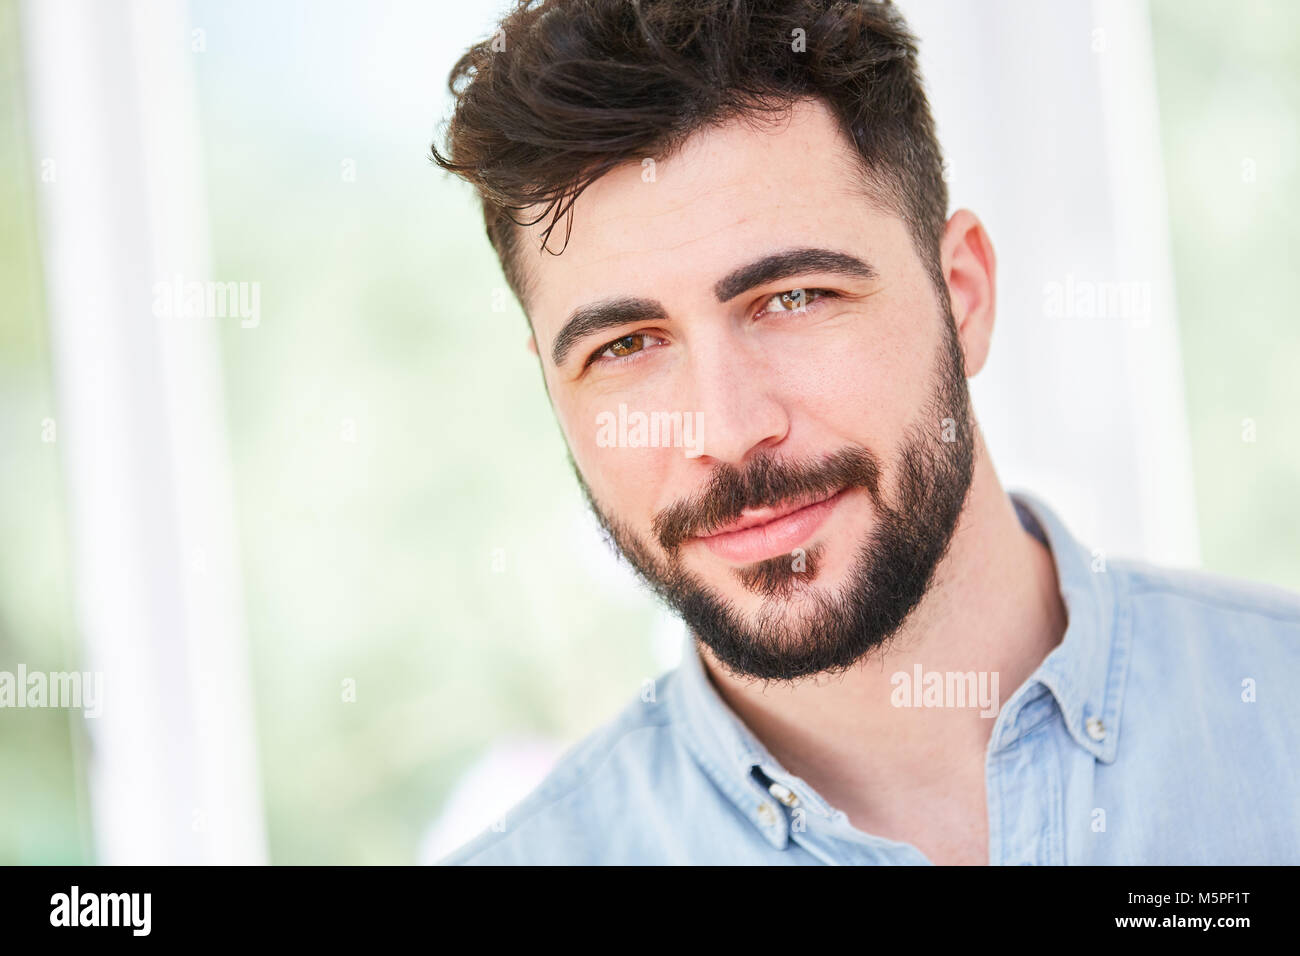 Portrait d'un jeune homme à barbe complète Banque D'Images